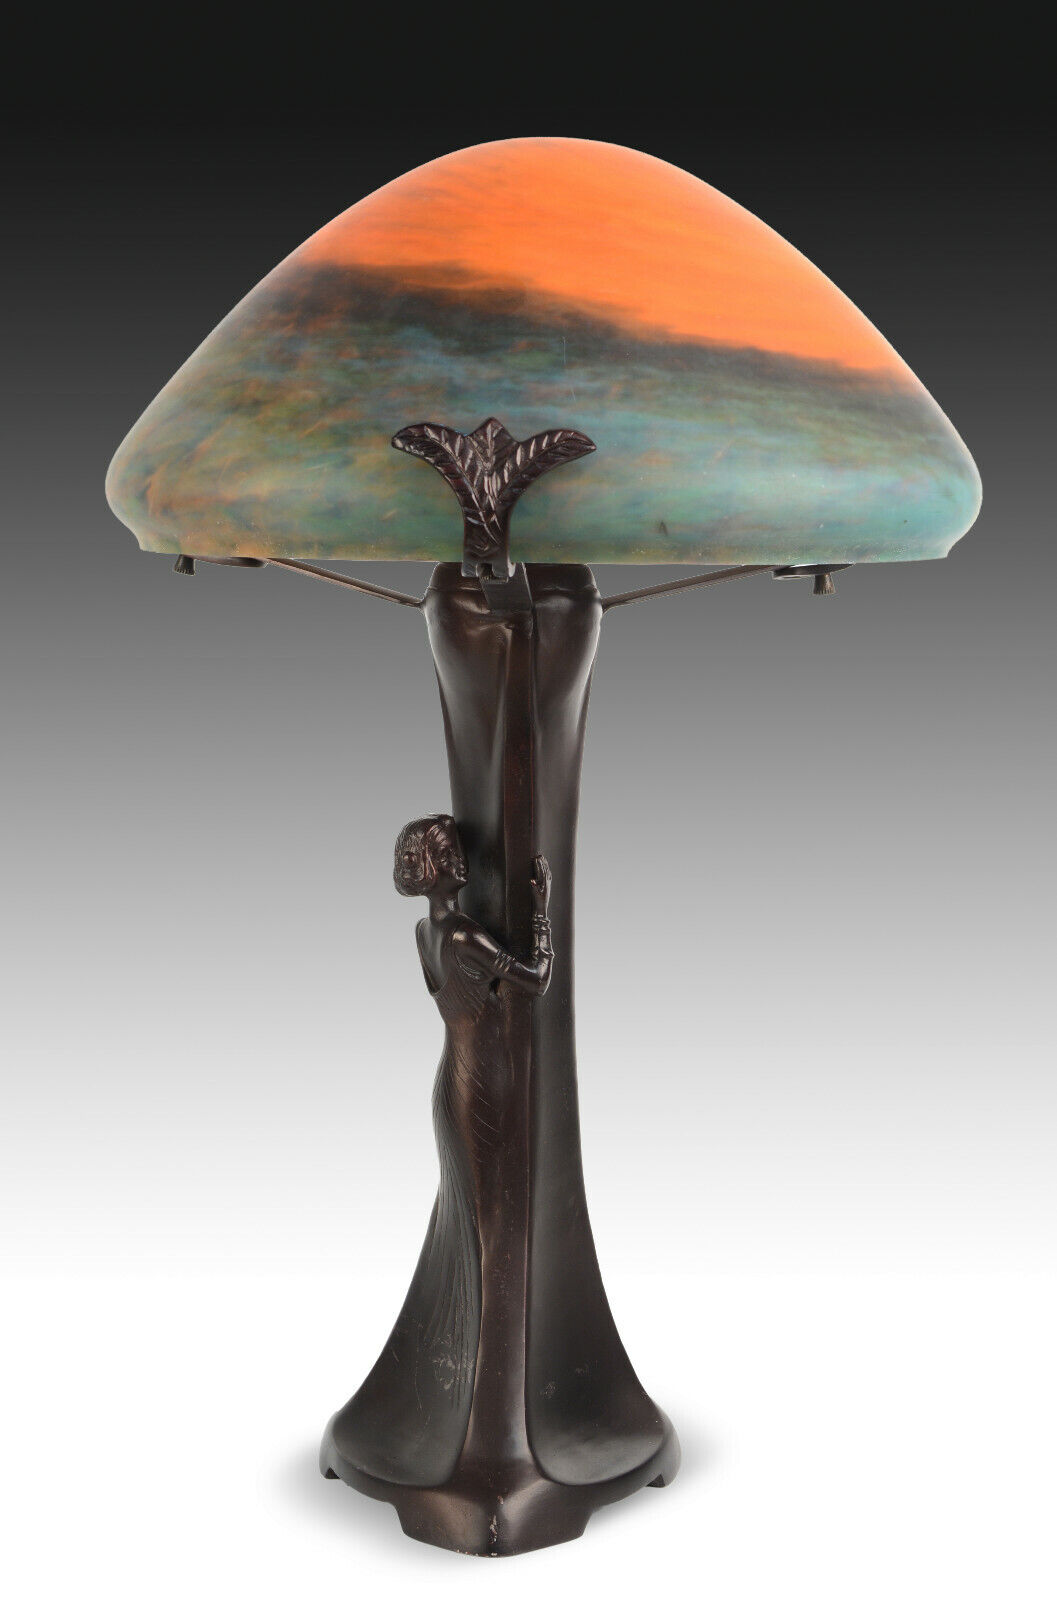 Lámpara de mesa, después de los modelos de estilo Art Nouveau.